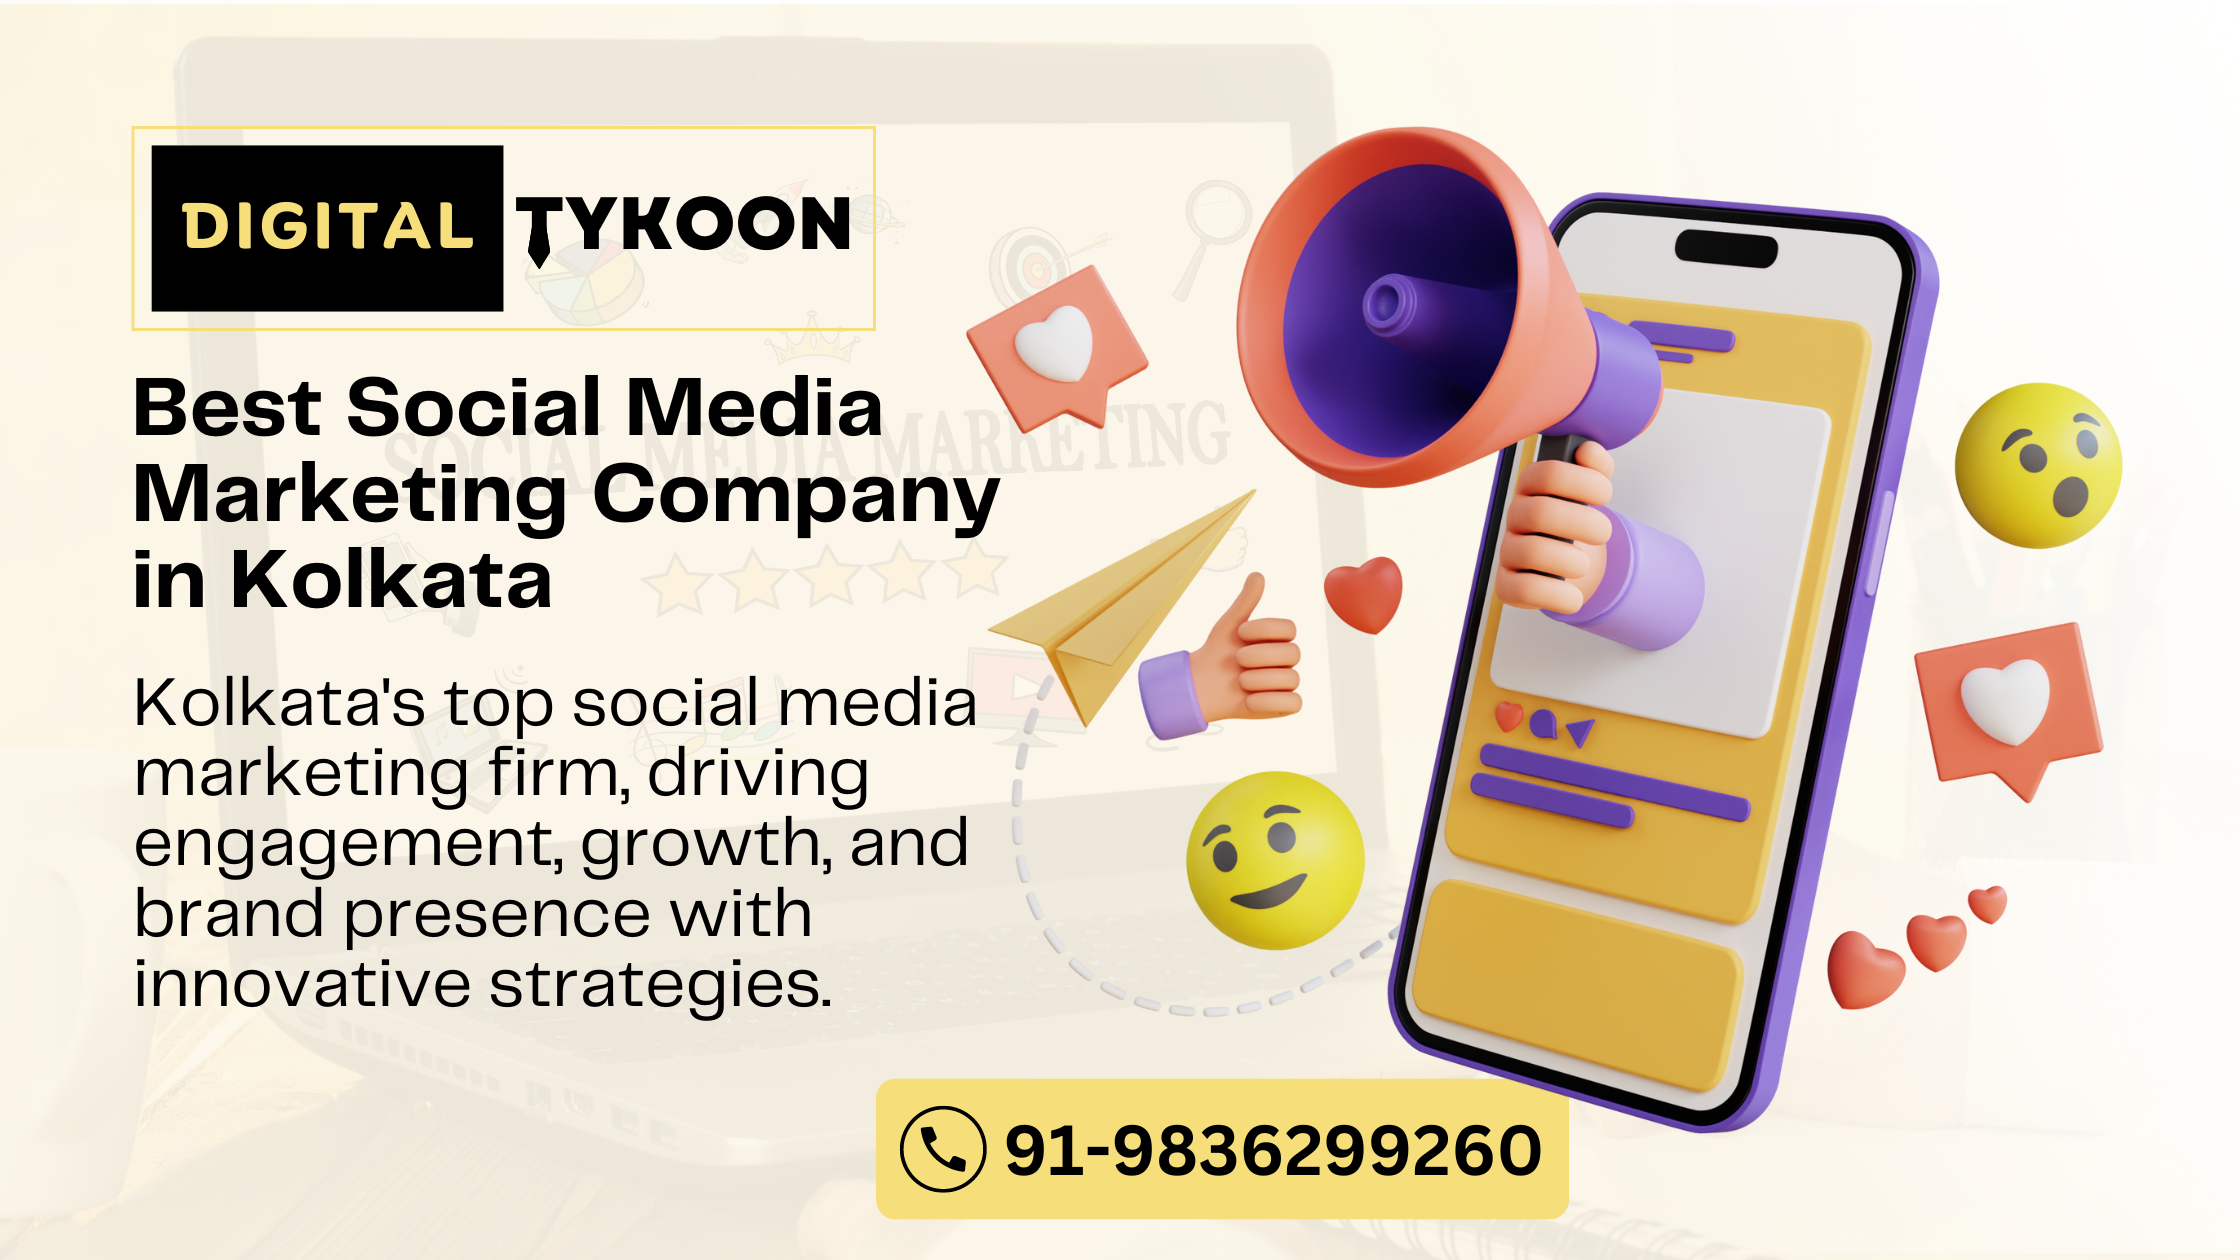 Best Social Media Marketing Company in Kolkata | SMM Services Agency Kolkata - Digital Tykoon